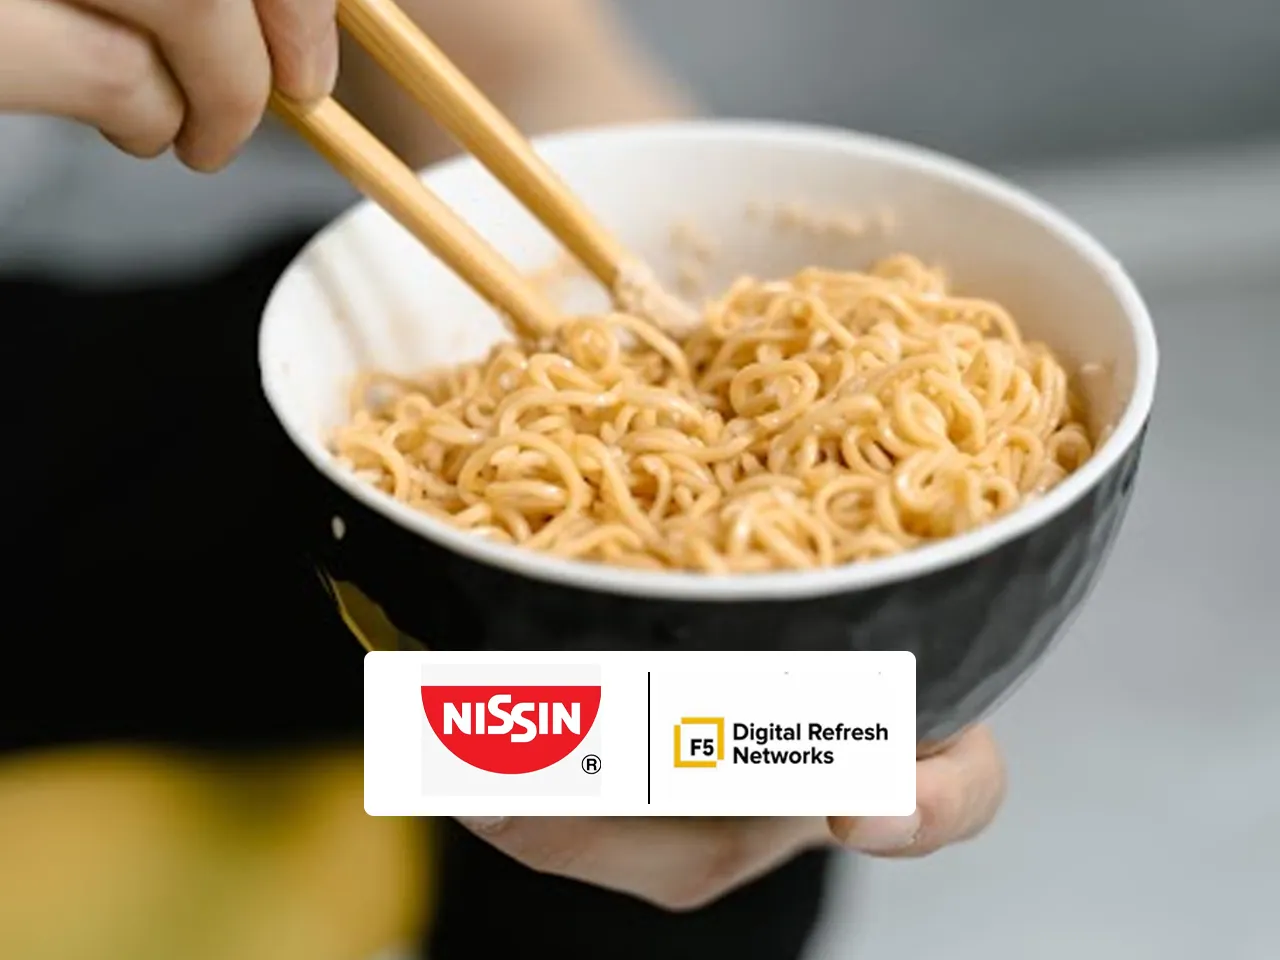 Digital Refresh Networks wins the digital mandate for Nissin Geki Korean Noodles